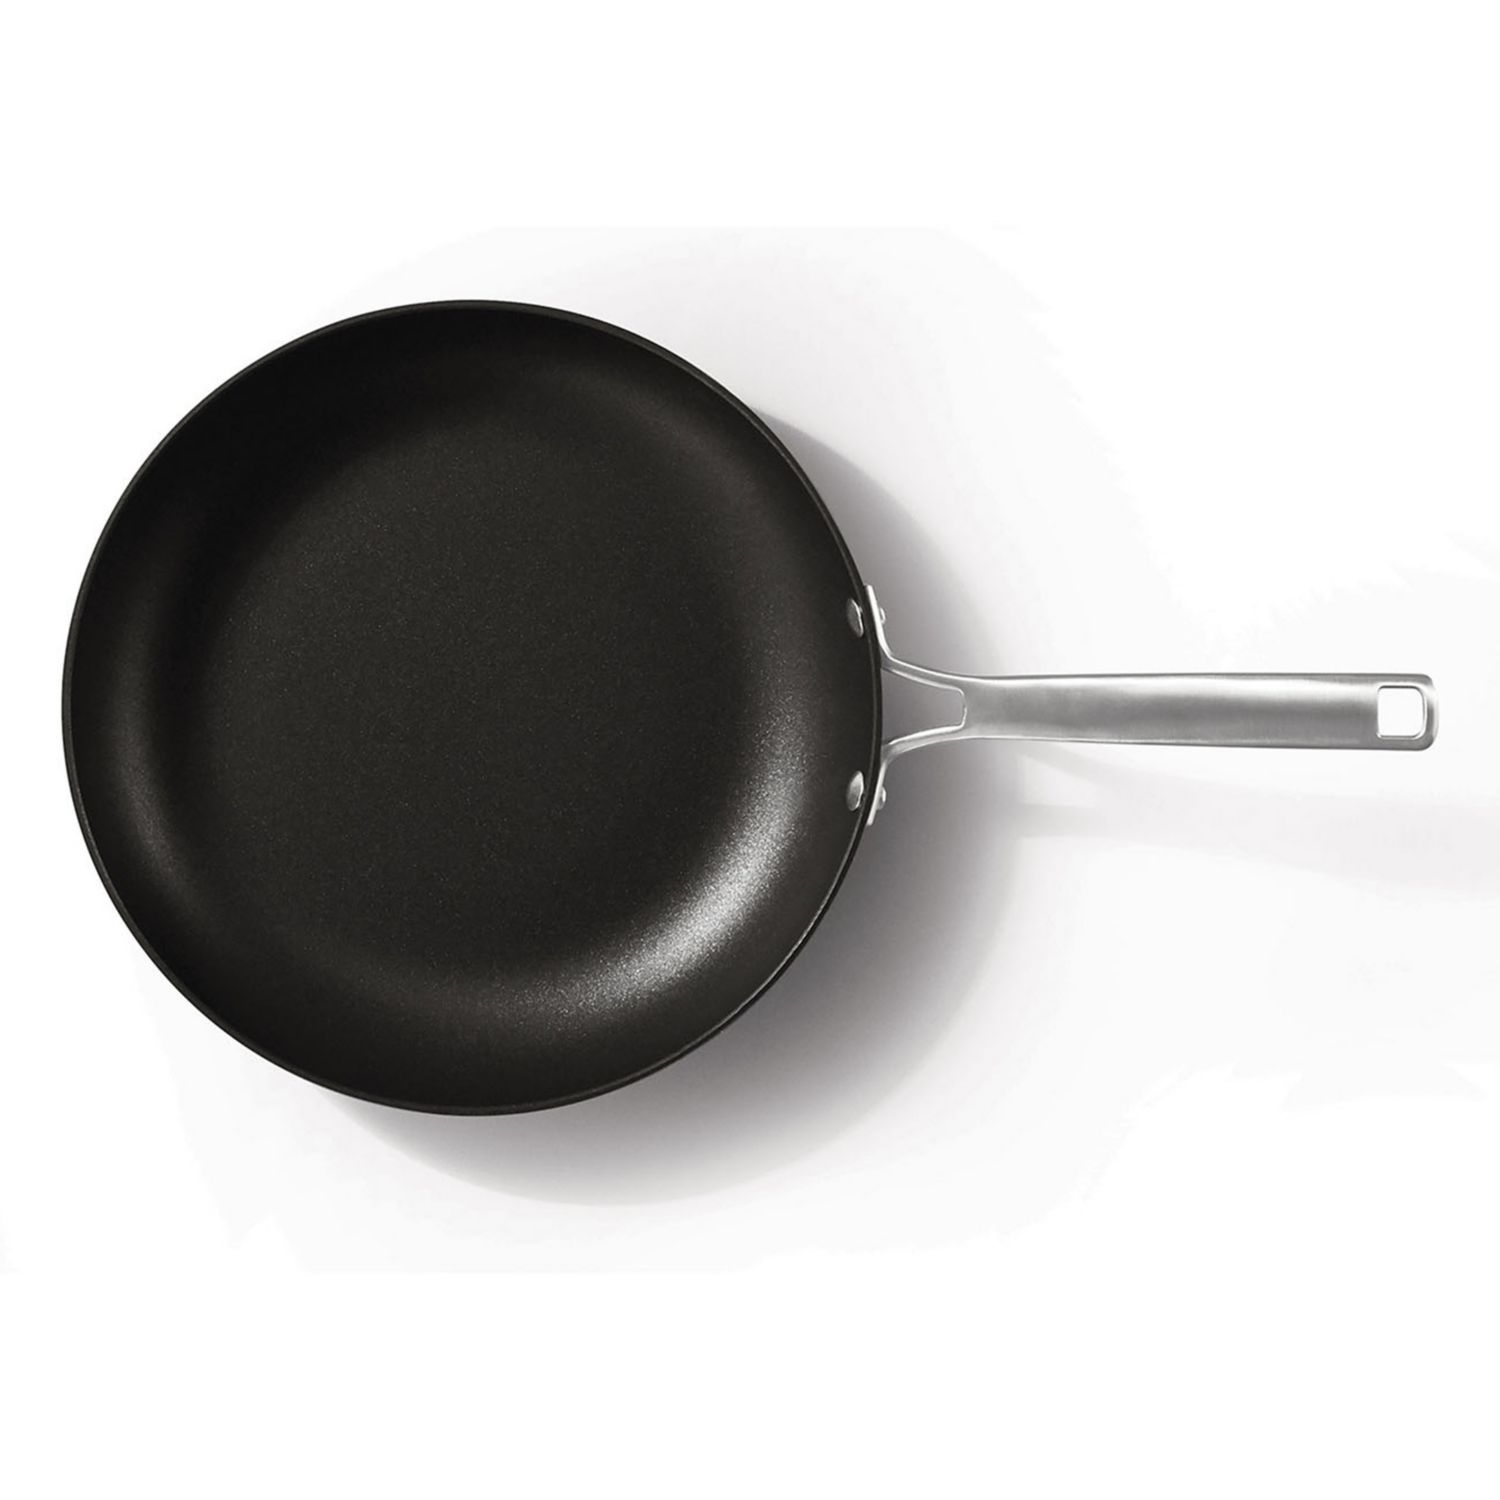 calphalon frying pan